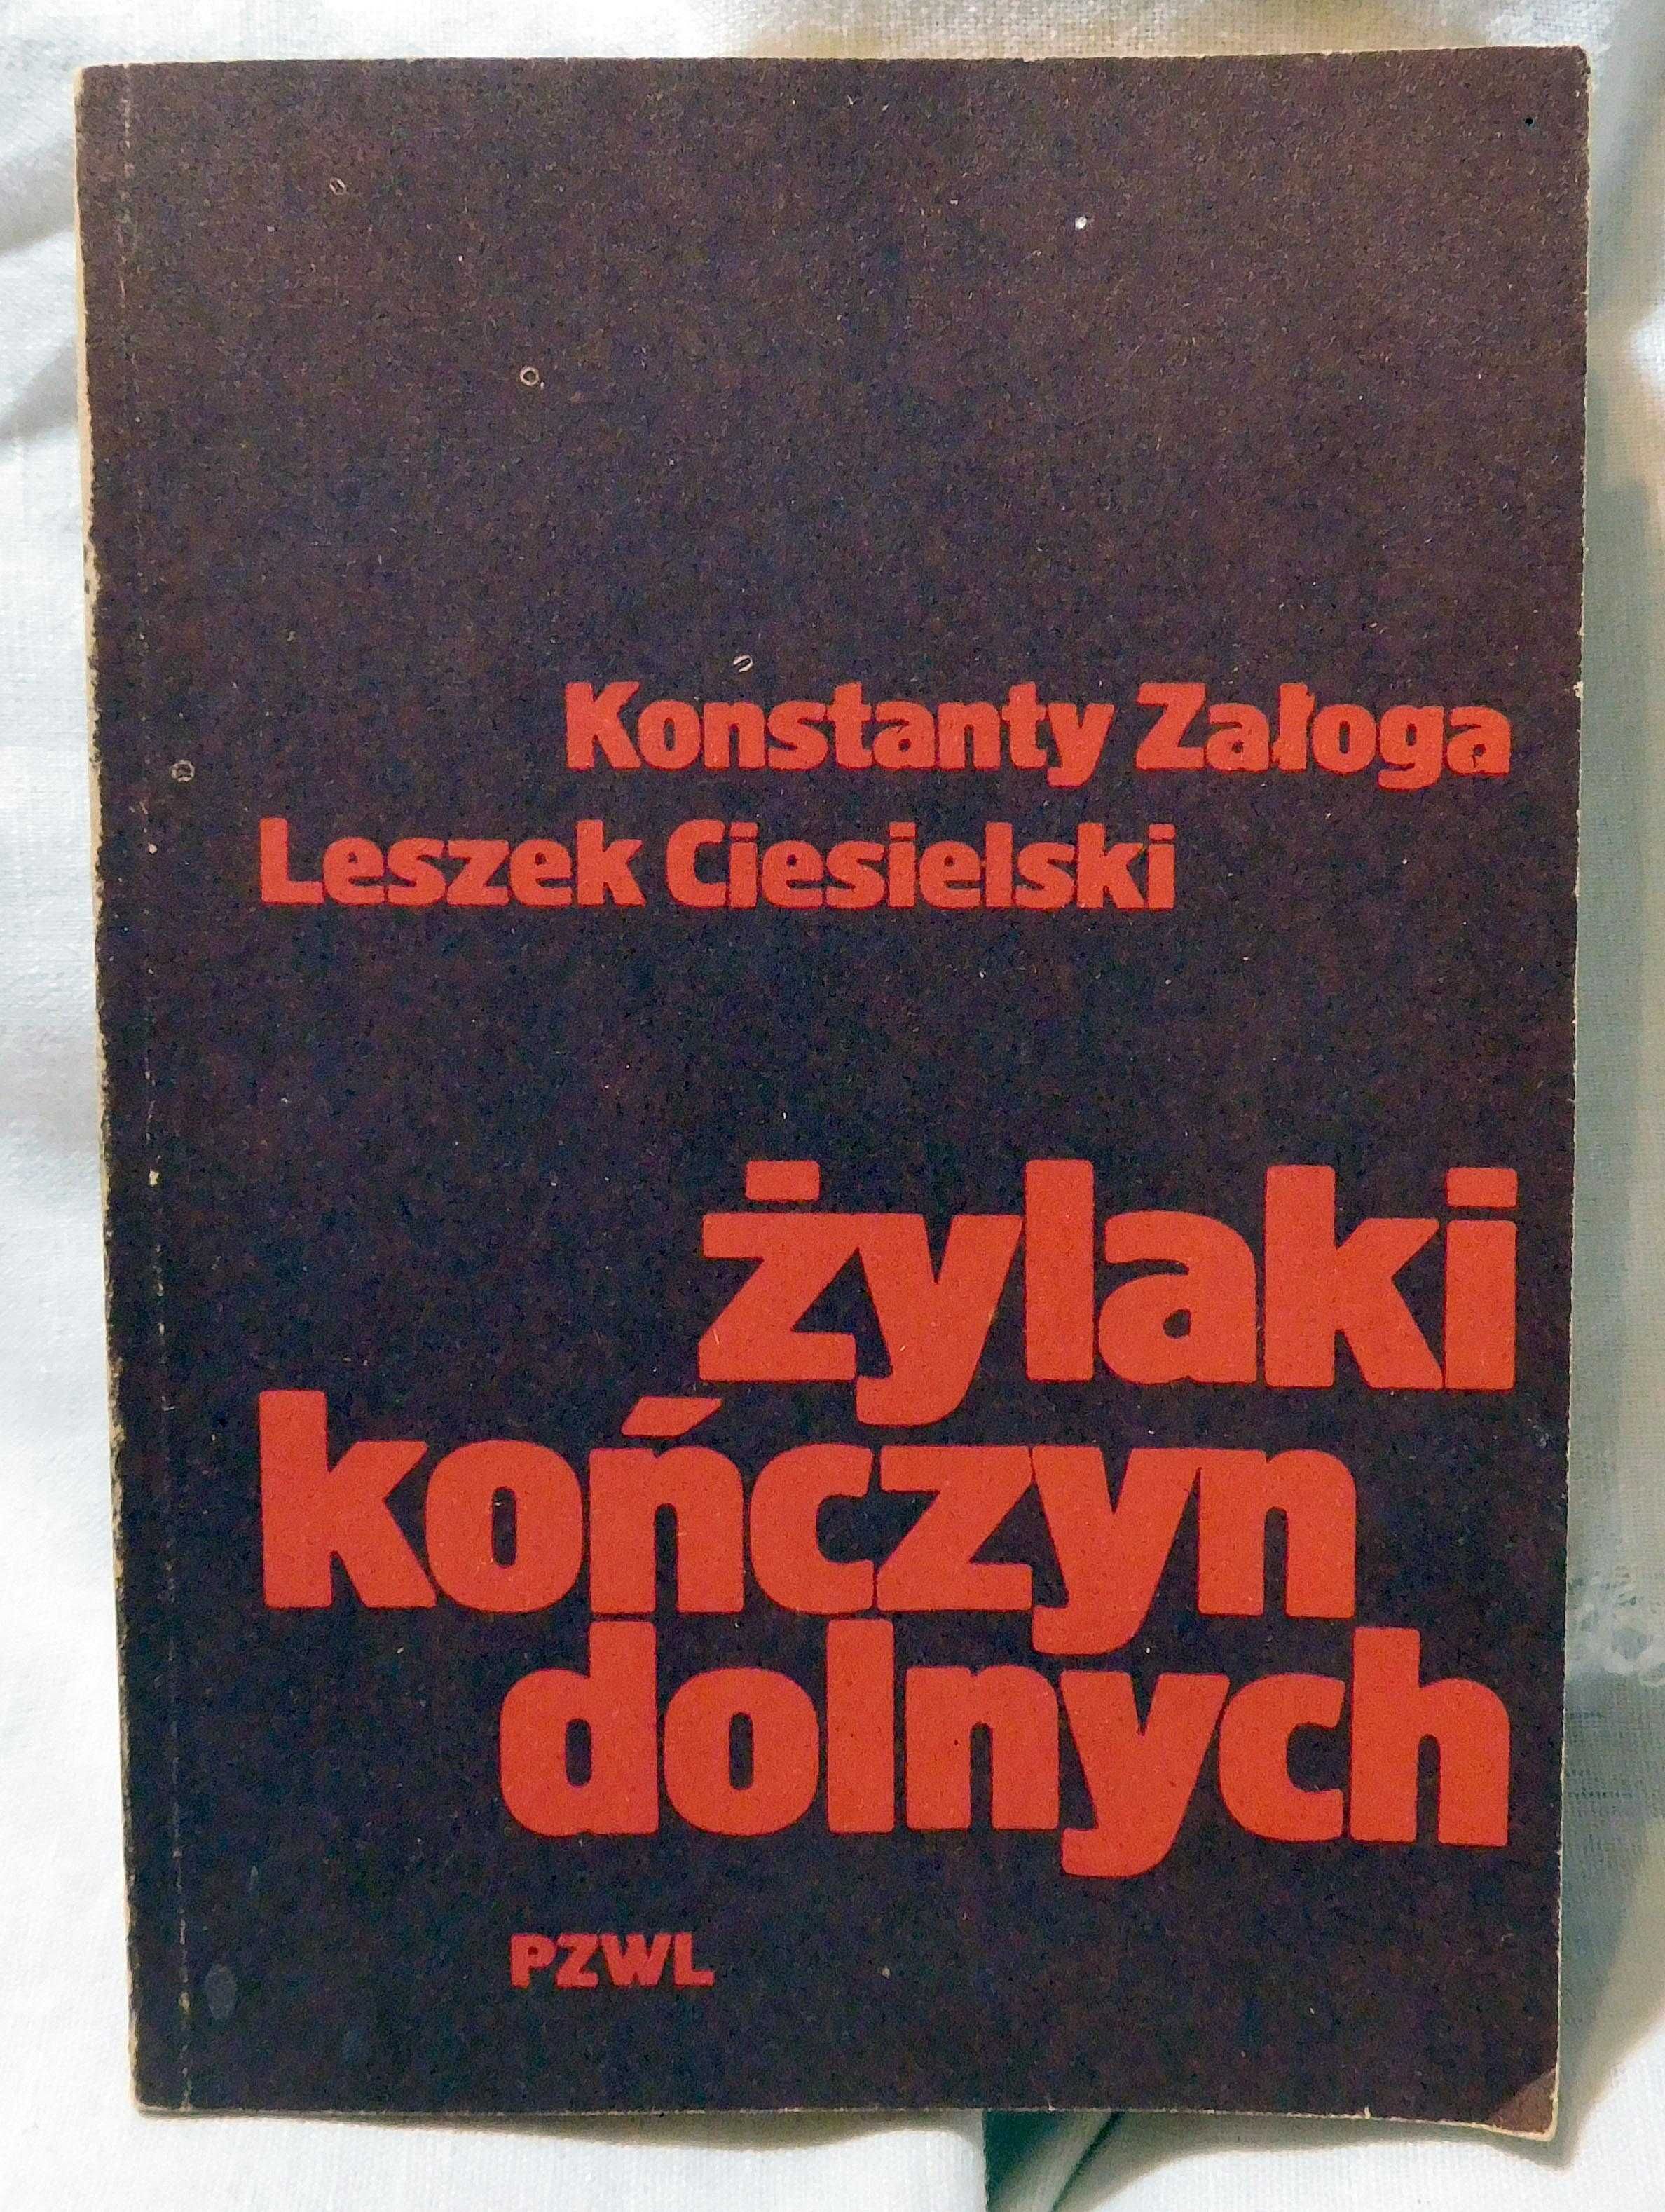 Książka Żylaki kończyn dolnych- Konstanty Załoga, Leszek Ciesielski